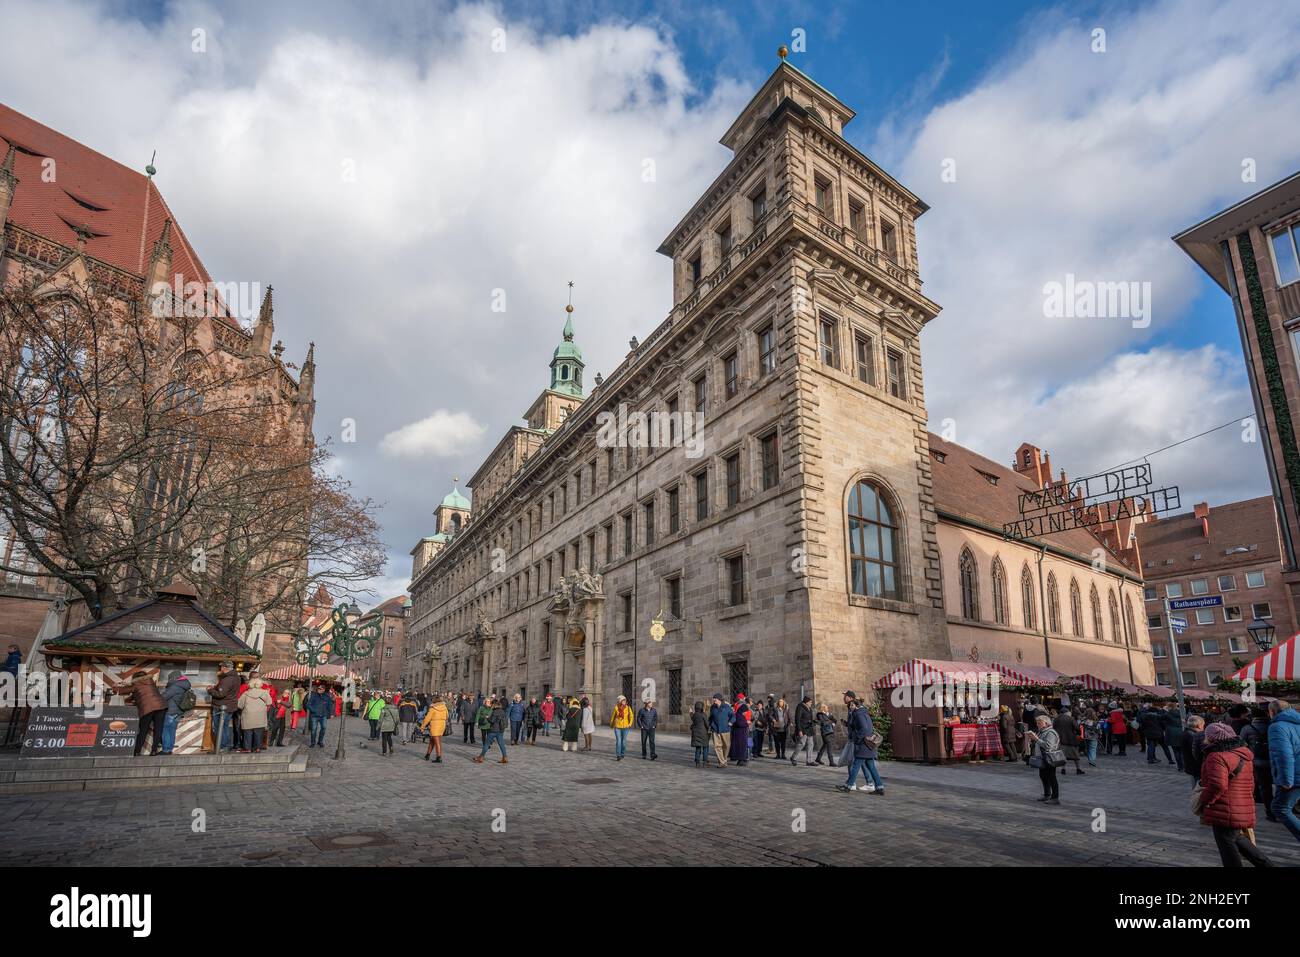 Nuremberg City Hall - Old town hall - Nuremberg, Bavaria, Germany Stock Photo